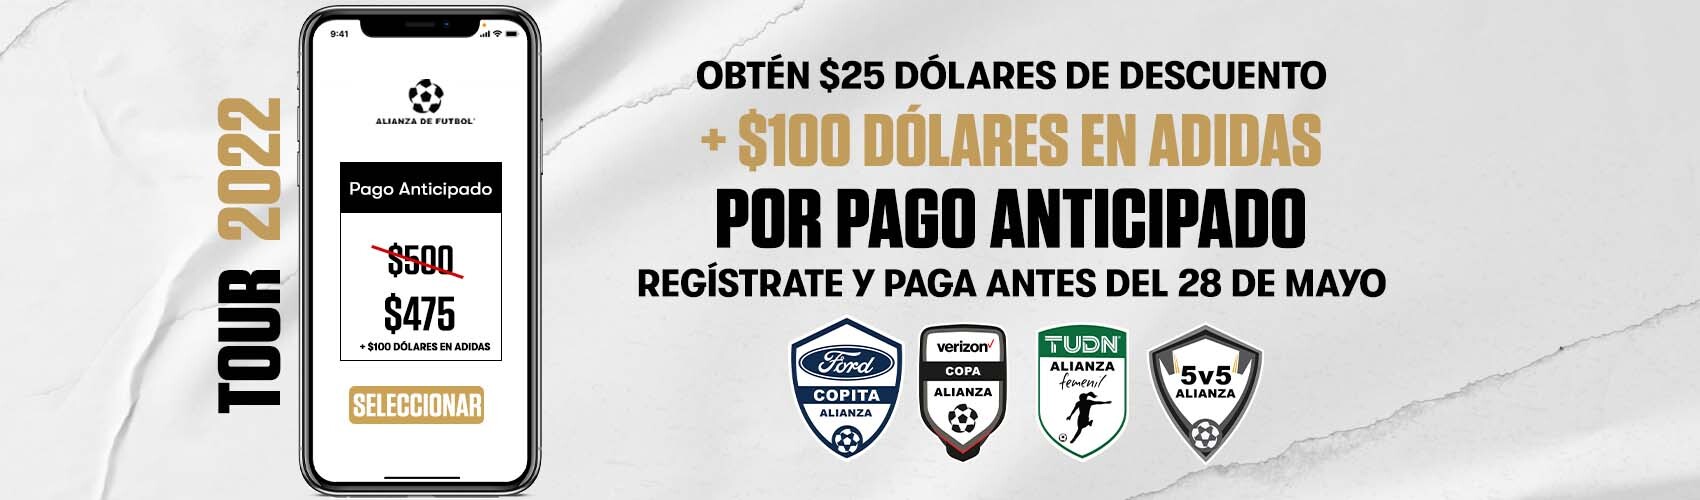 Register now in Alianza de Futbol and get some benefits